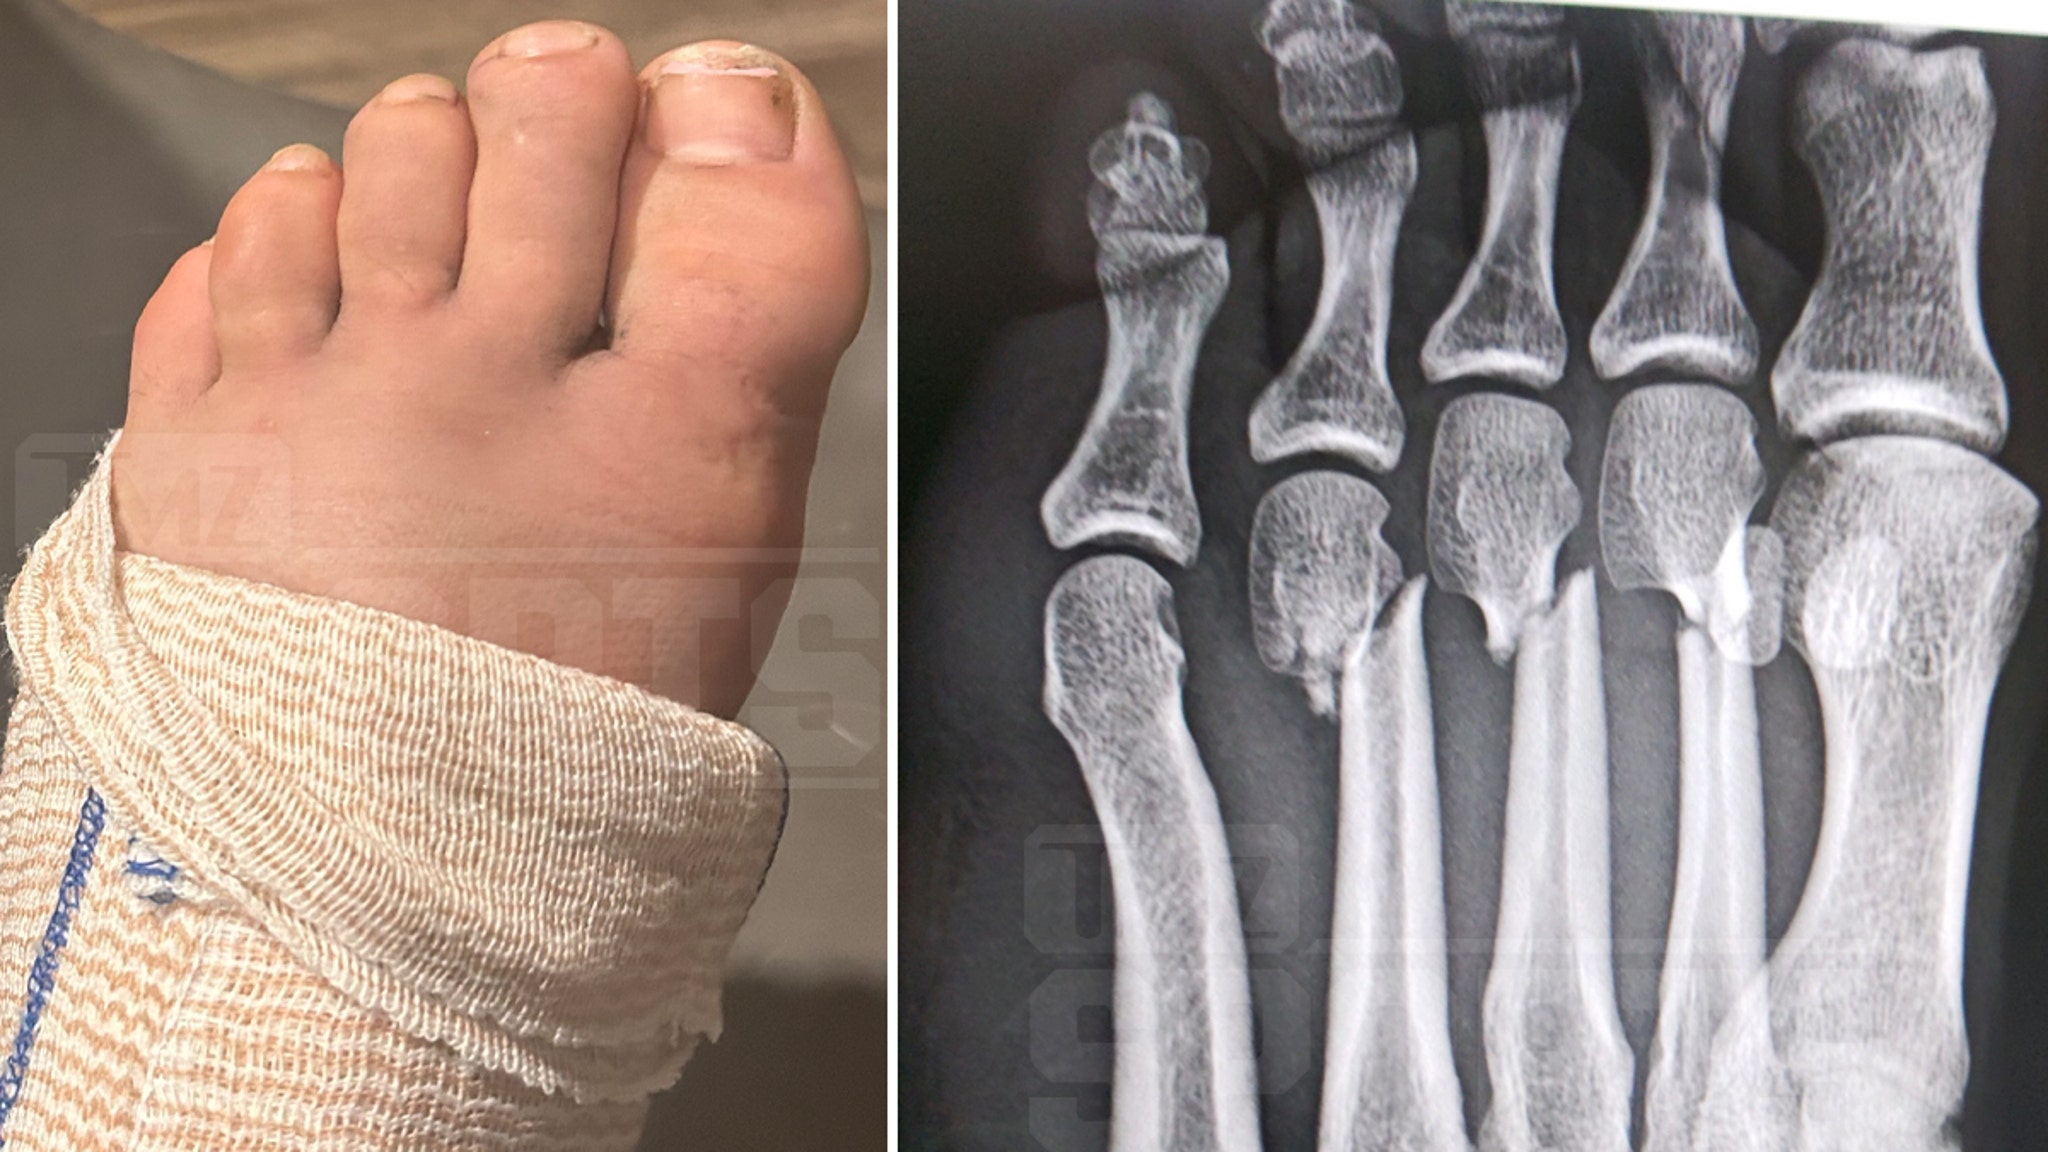 Darby Allin de AEW sufrió una fractura en el pie una semana antes de su intento del Monte Everest